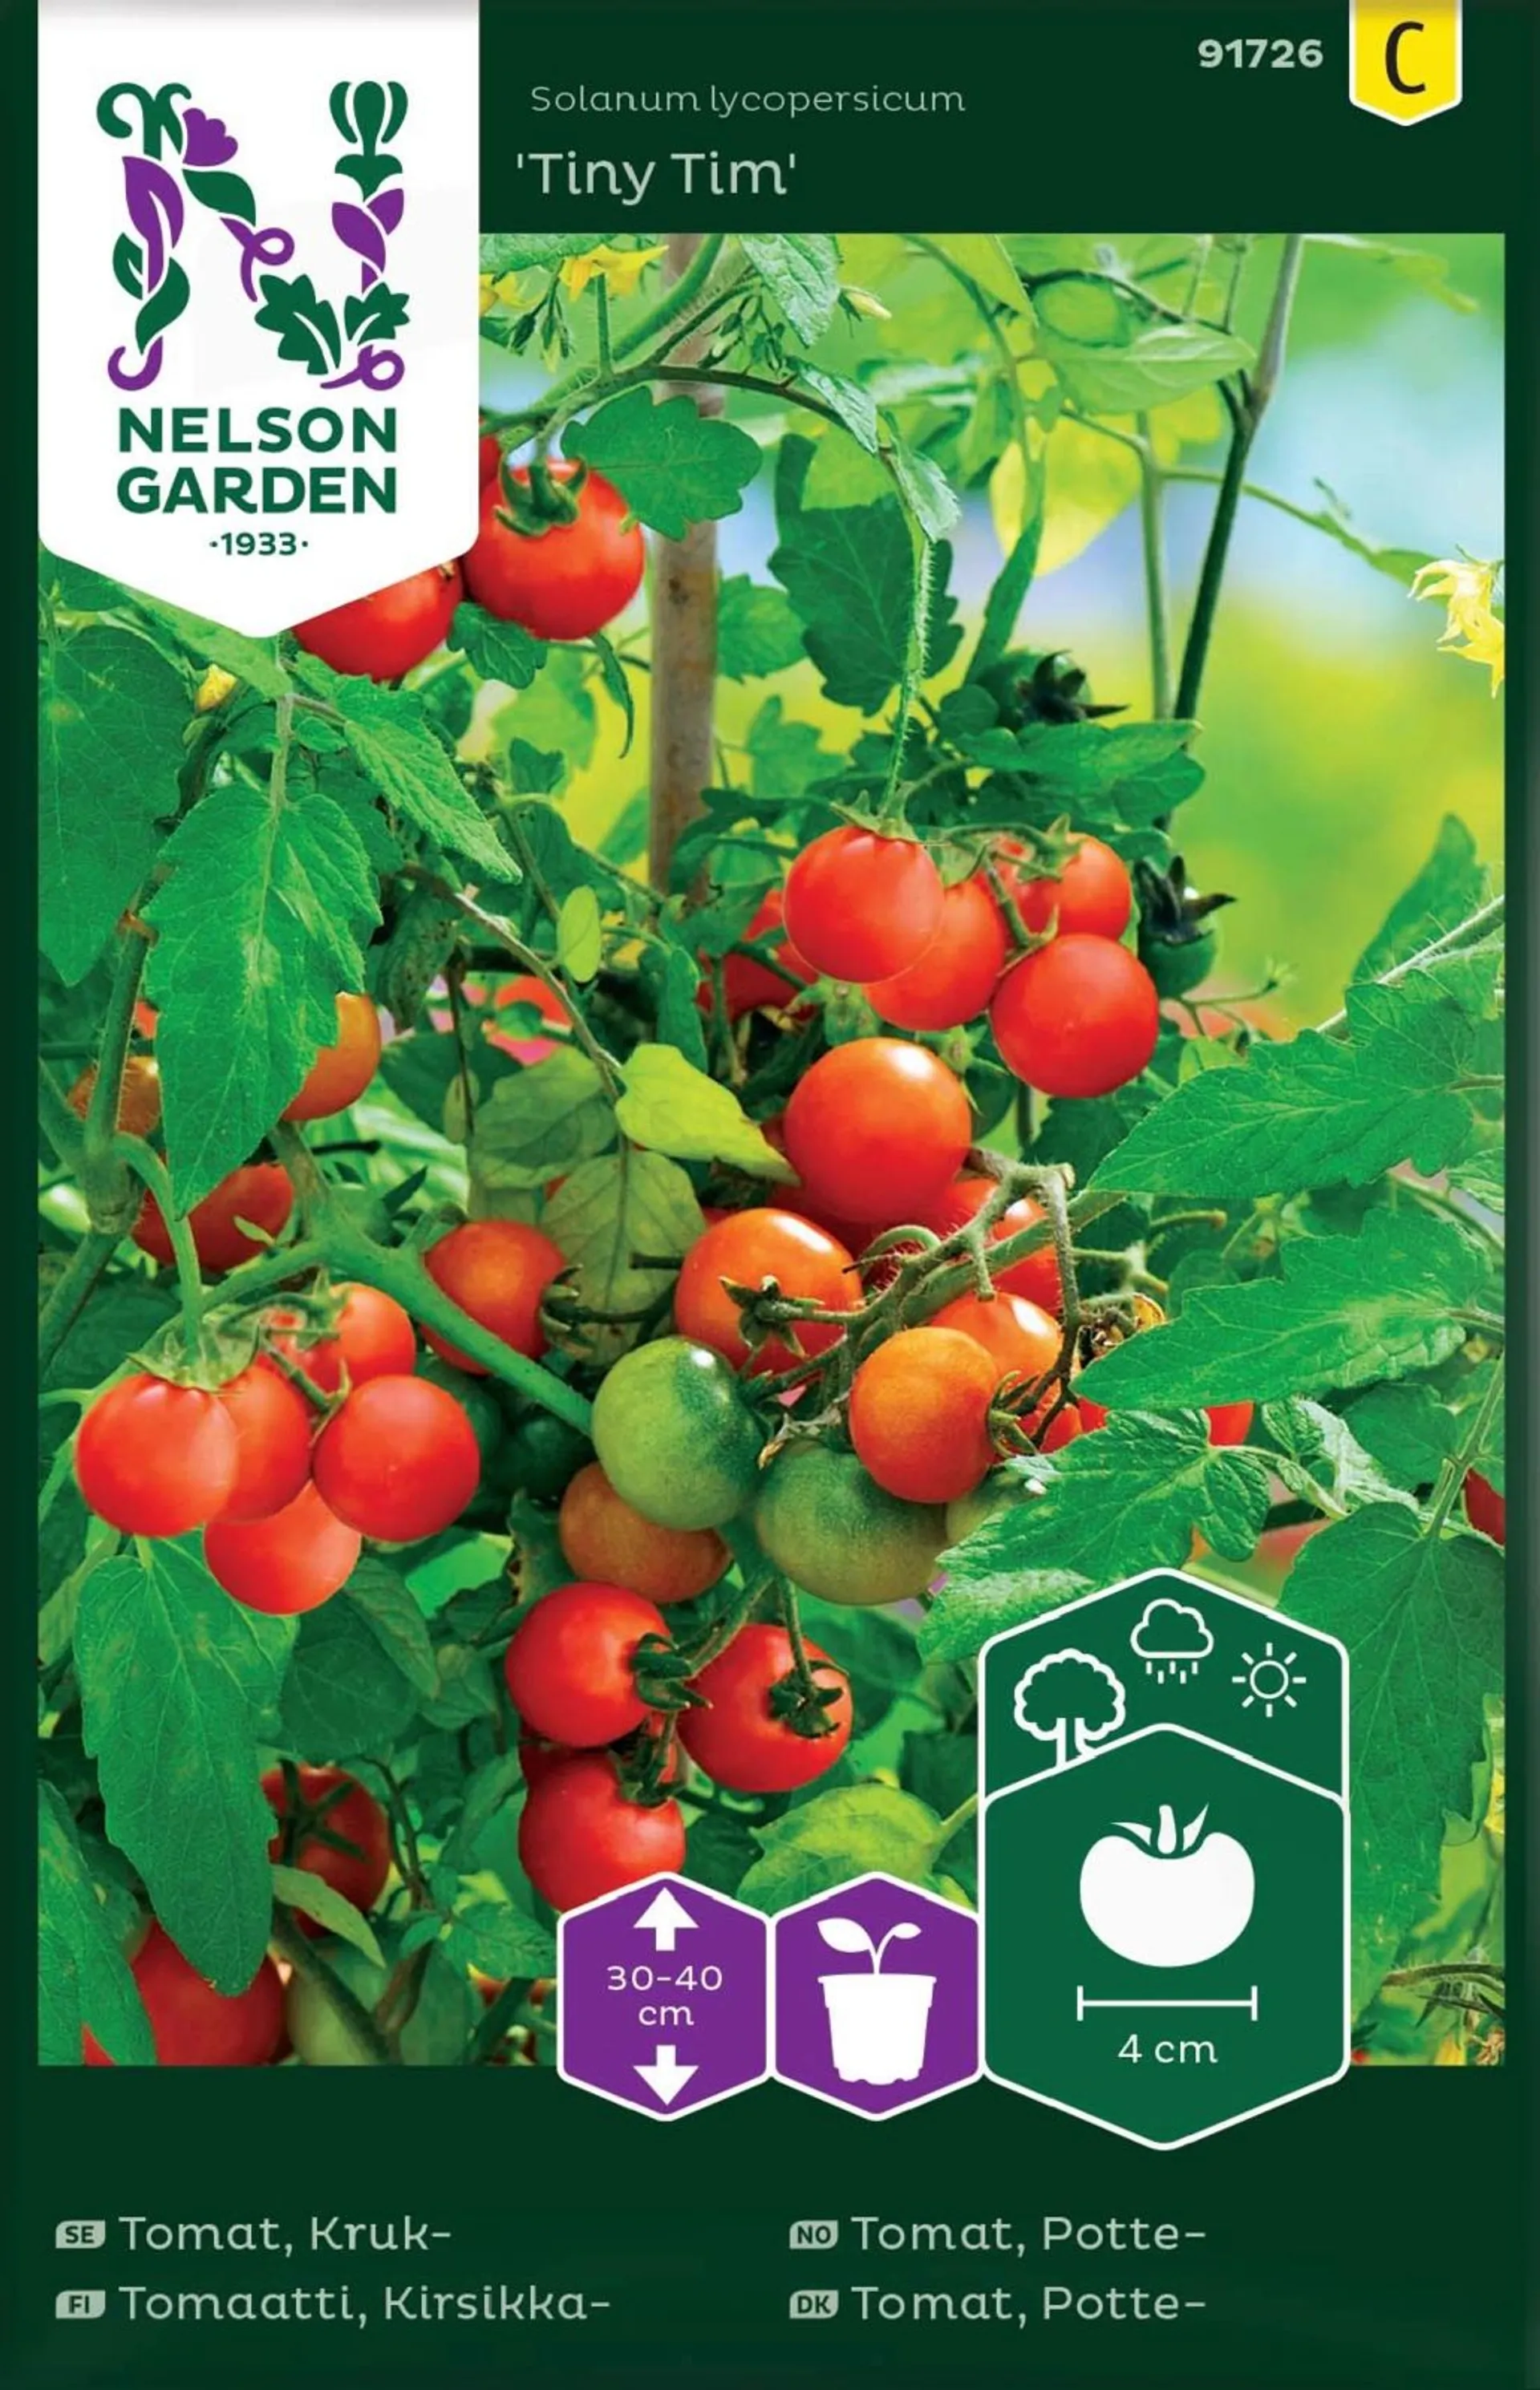 Nelson Garden Siemen Tomaatti, Kirsikka-, Tiny Tim